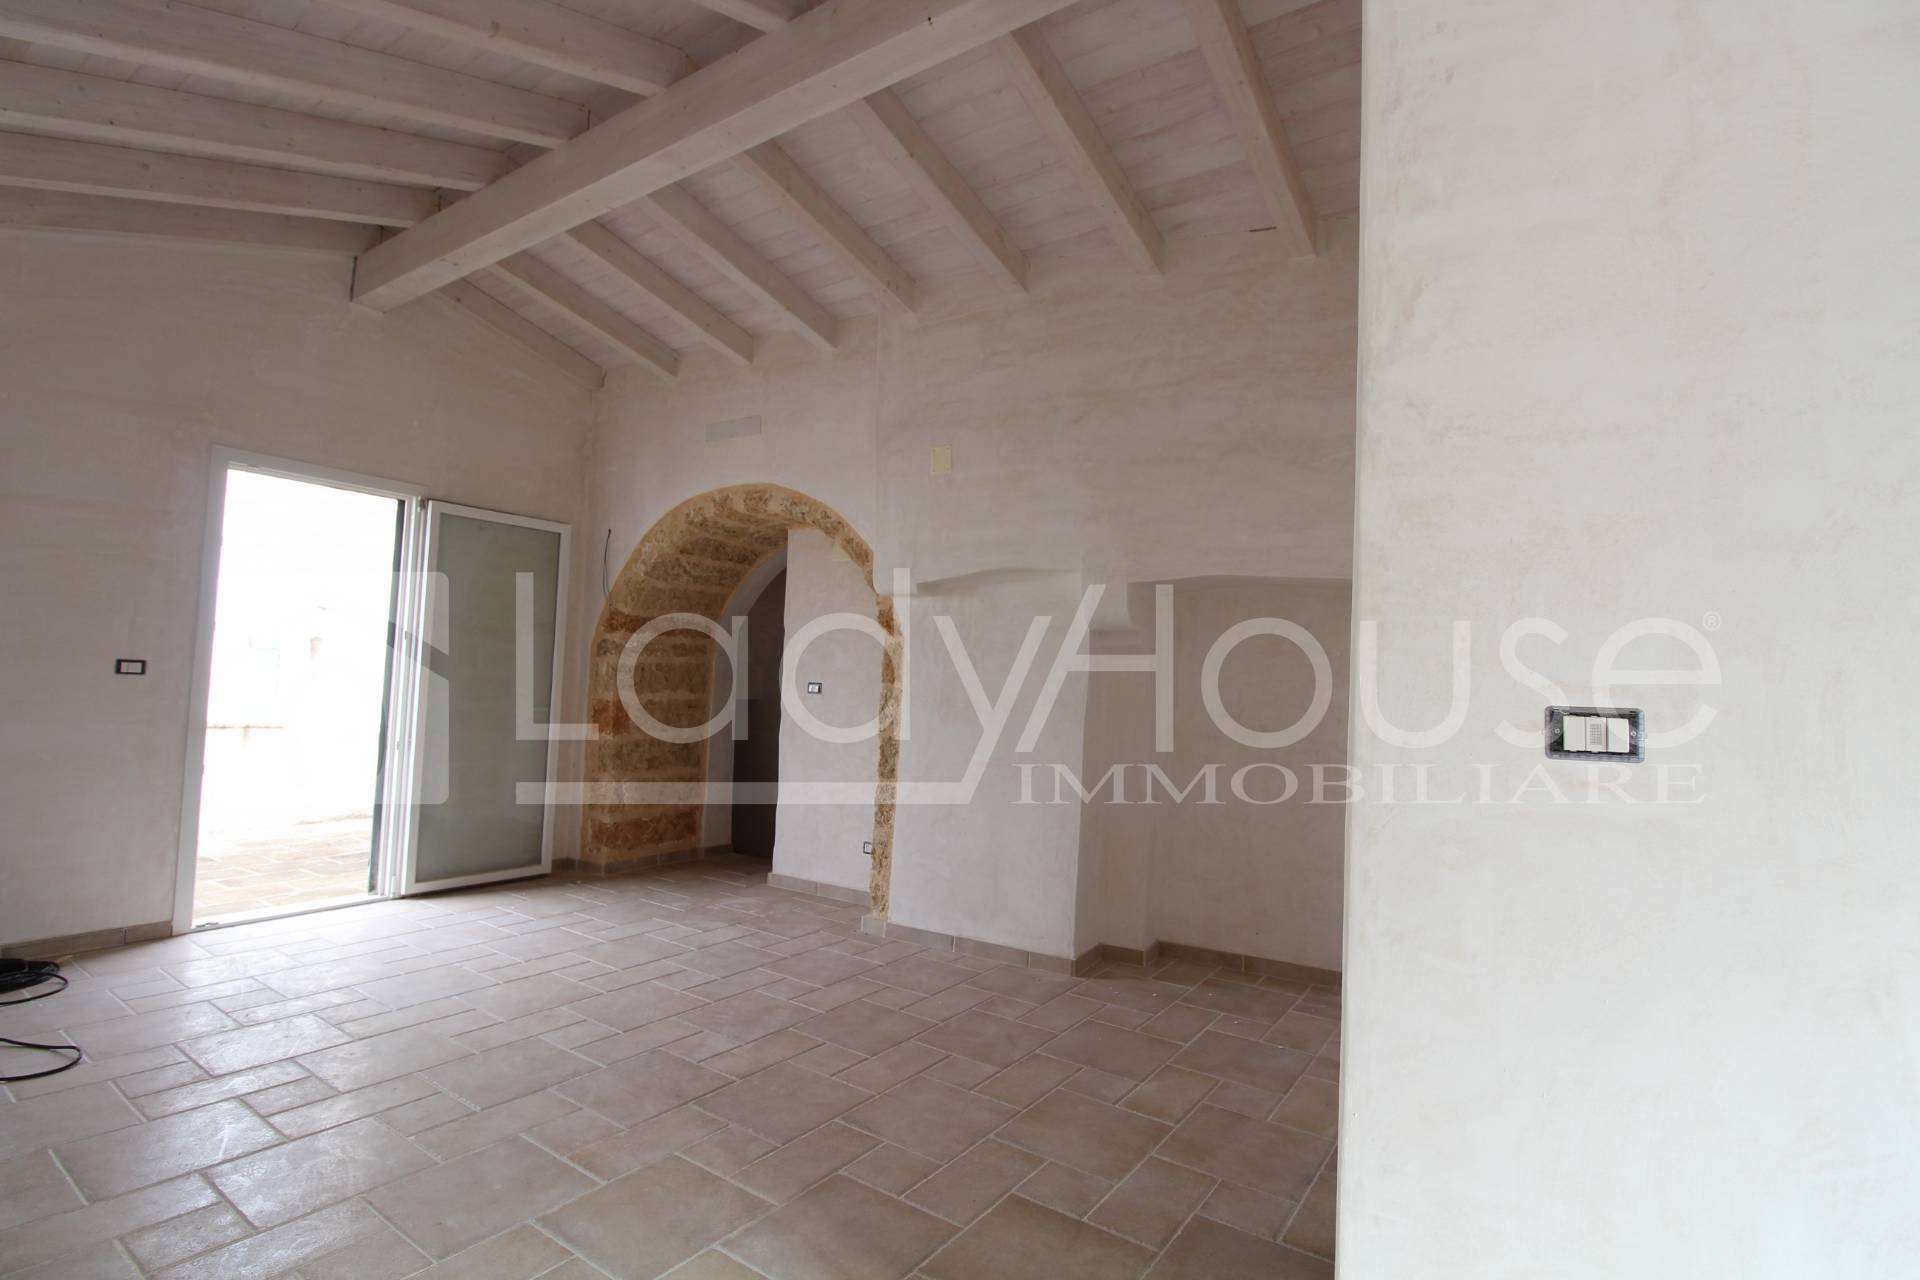 Appartamento in vendita a Matino, 3 locali, prezzo € 105.000 | PortaleAgenzieImmobiliari.it